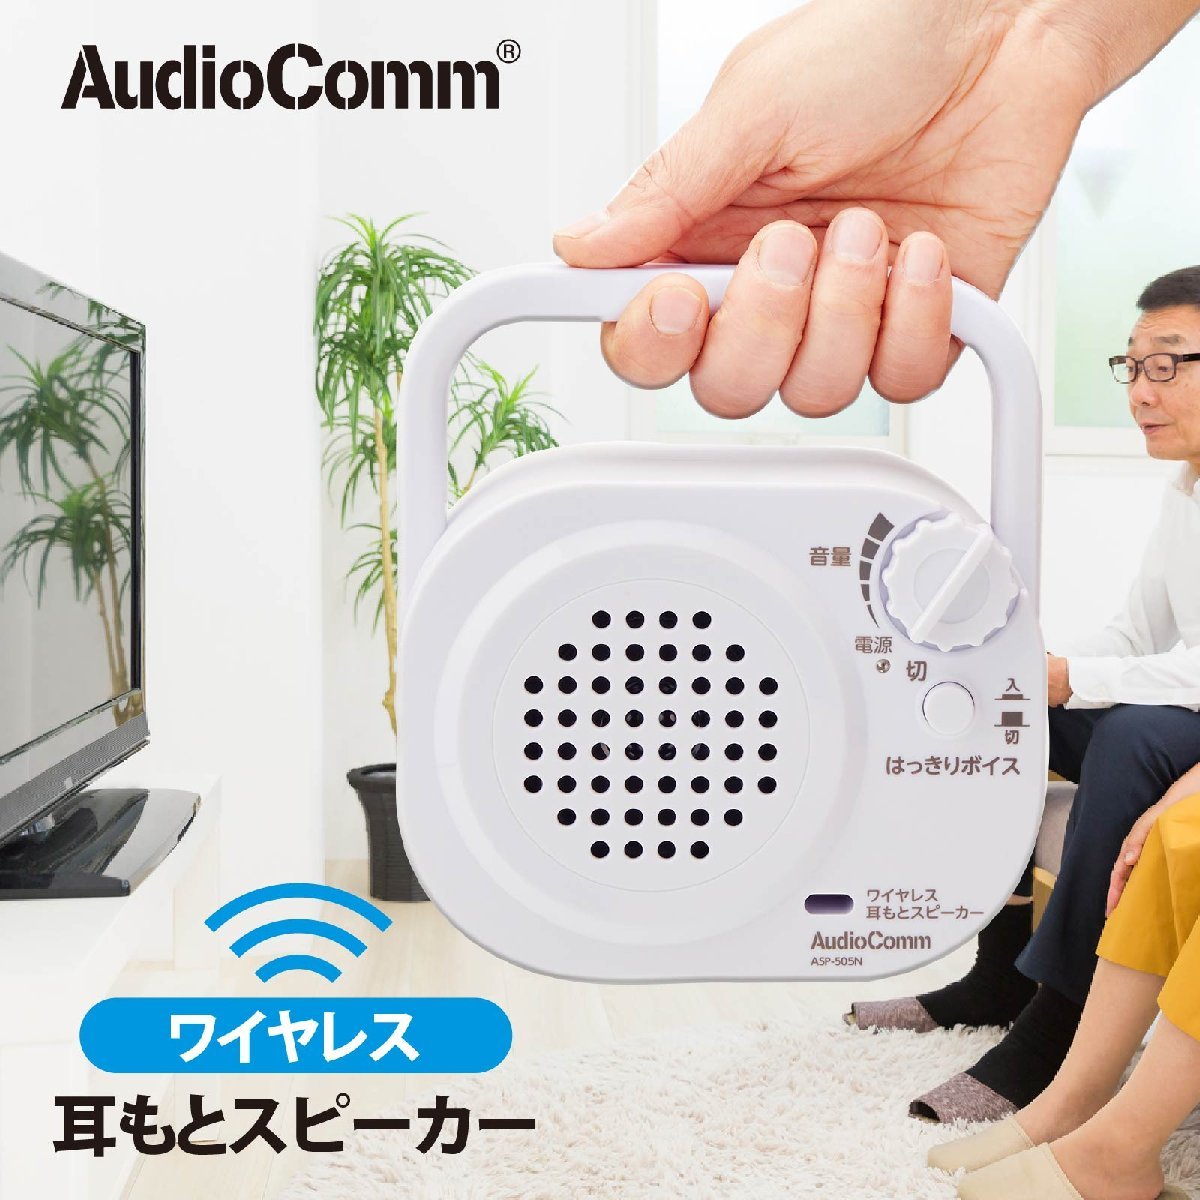 スピーカー ワイヤレス耳もとスピーカー AudioComm｜ASP-505N 03-2069 オーム電機